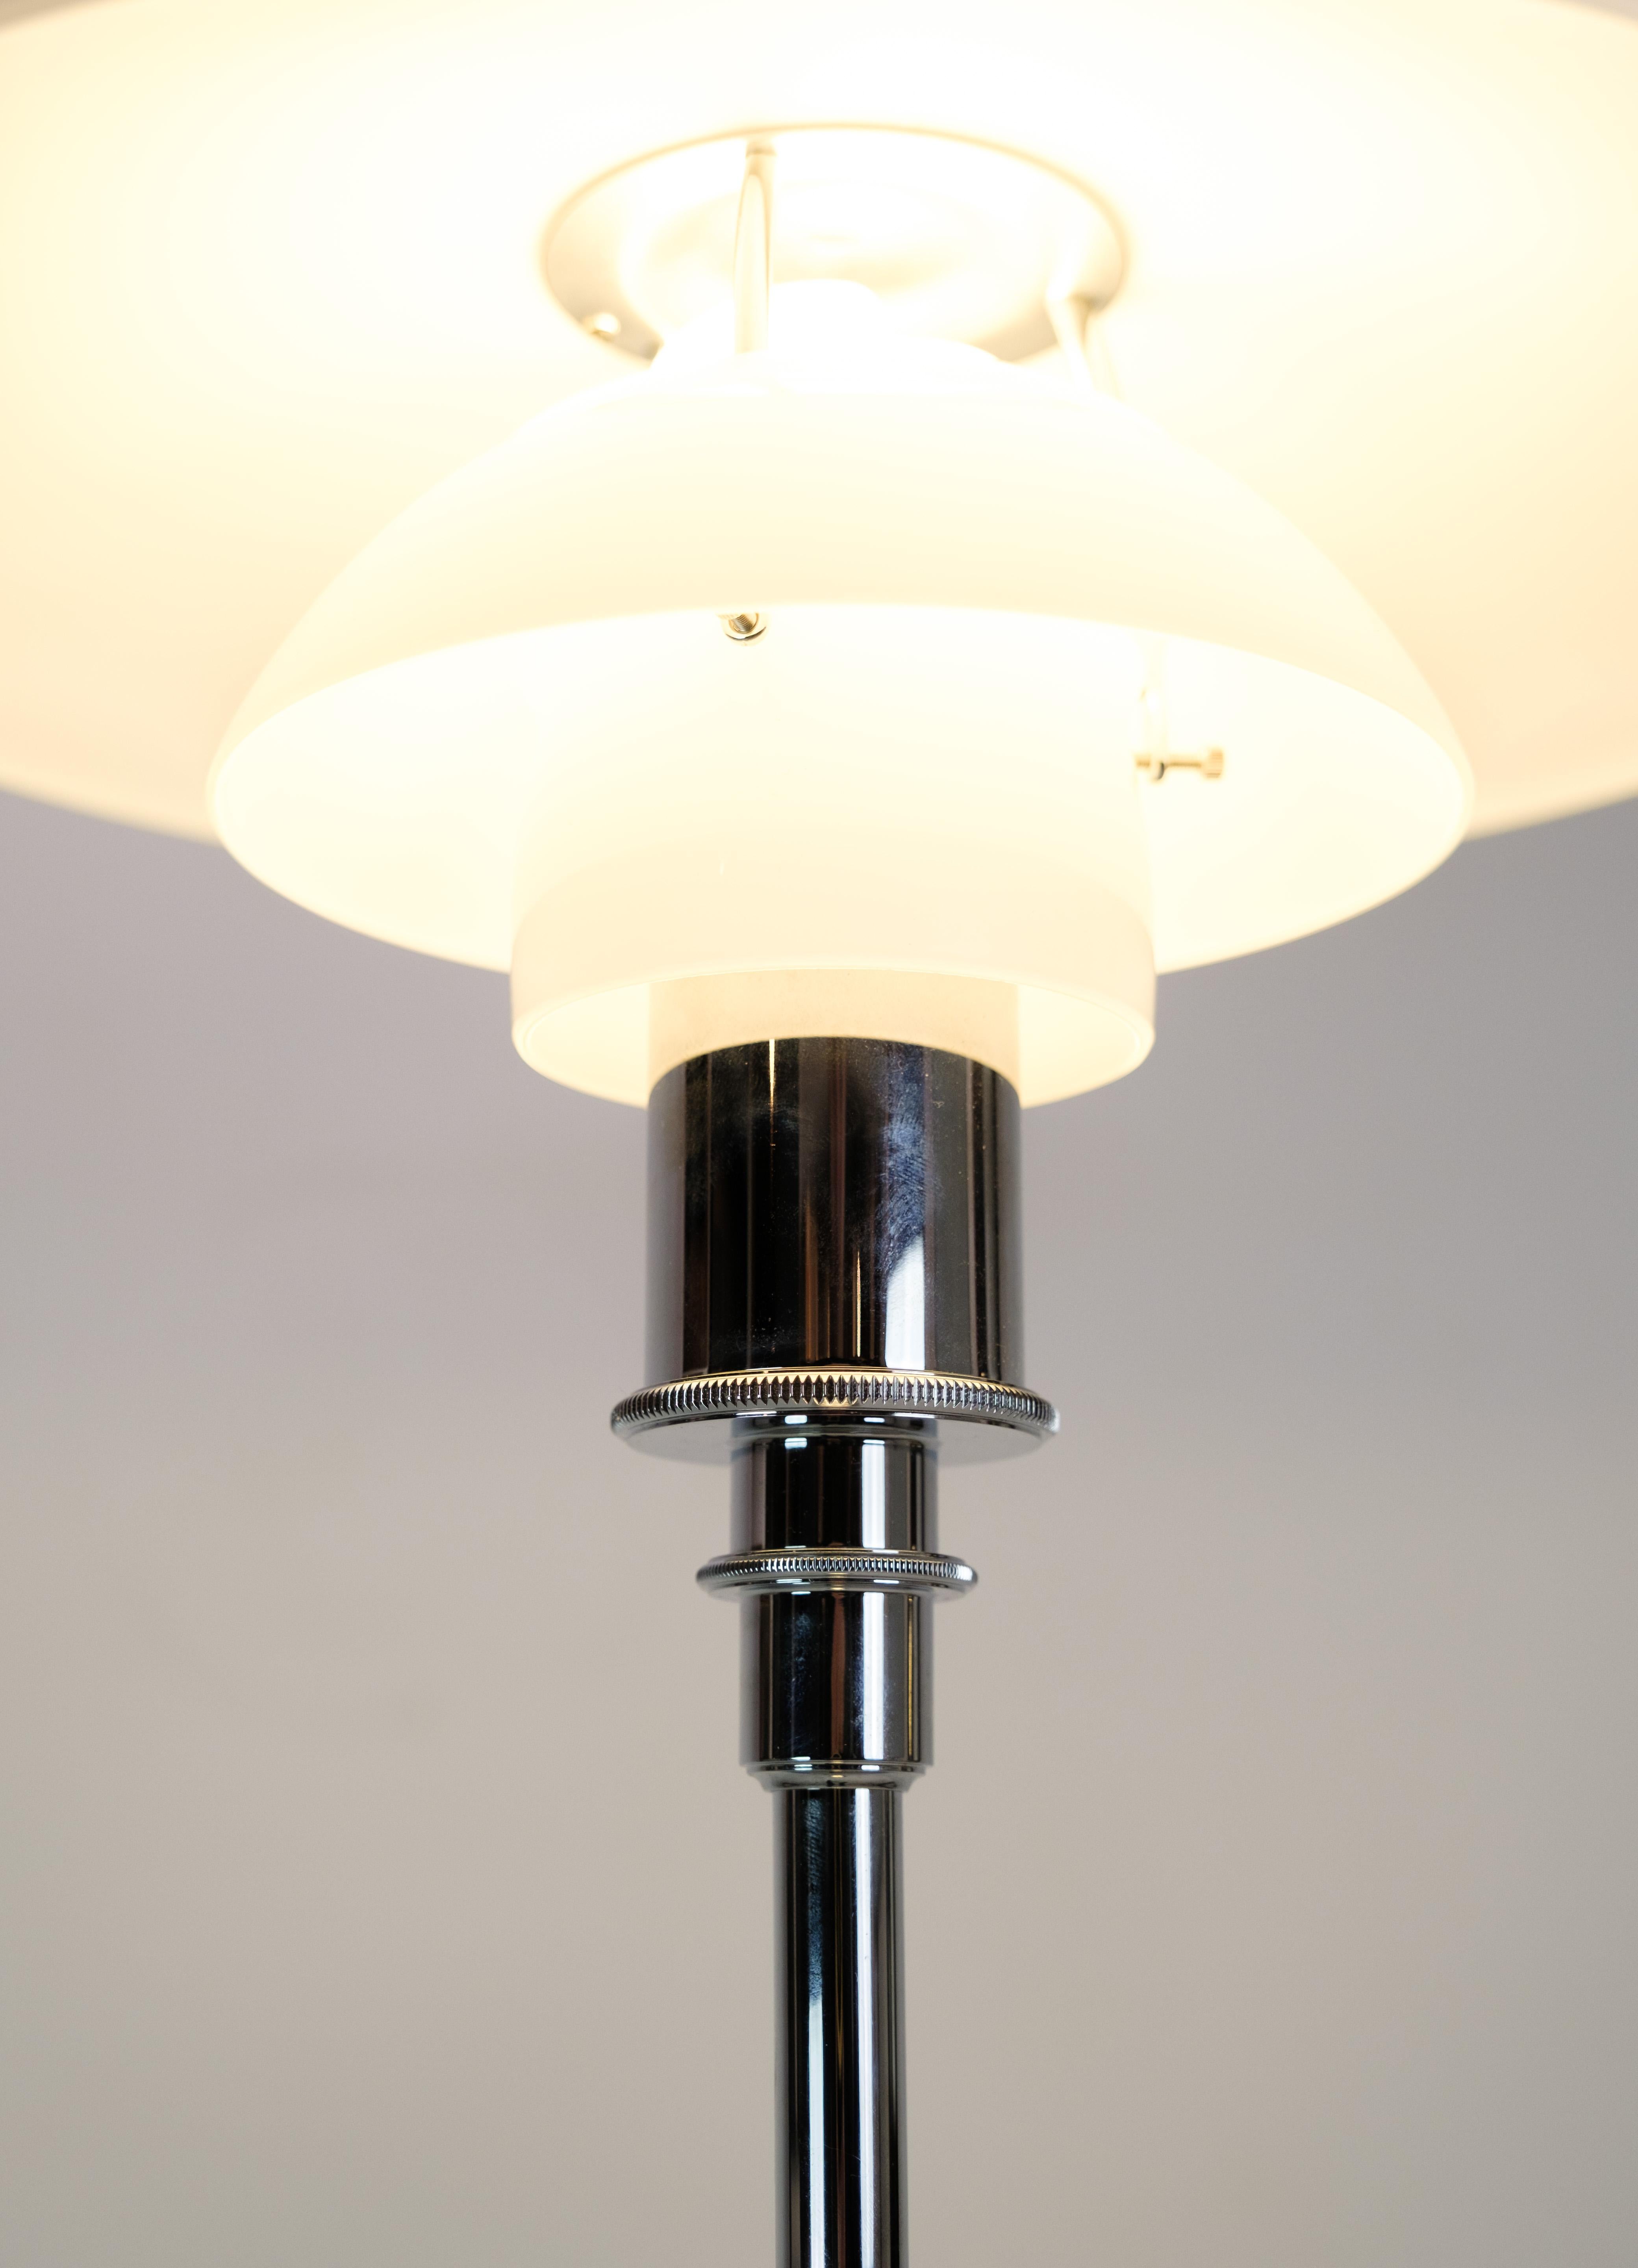 Lampadaire, modèle 3½-2½ chromé, conçu par Poul Henningsen avec des abat-jour en verre opalin blanc fabriqués par Louis Poulsen. Le cadre est chromé brillant et le cordon est en plastique noir avec fiche.

Ce produit sera inspecté minutieusement